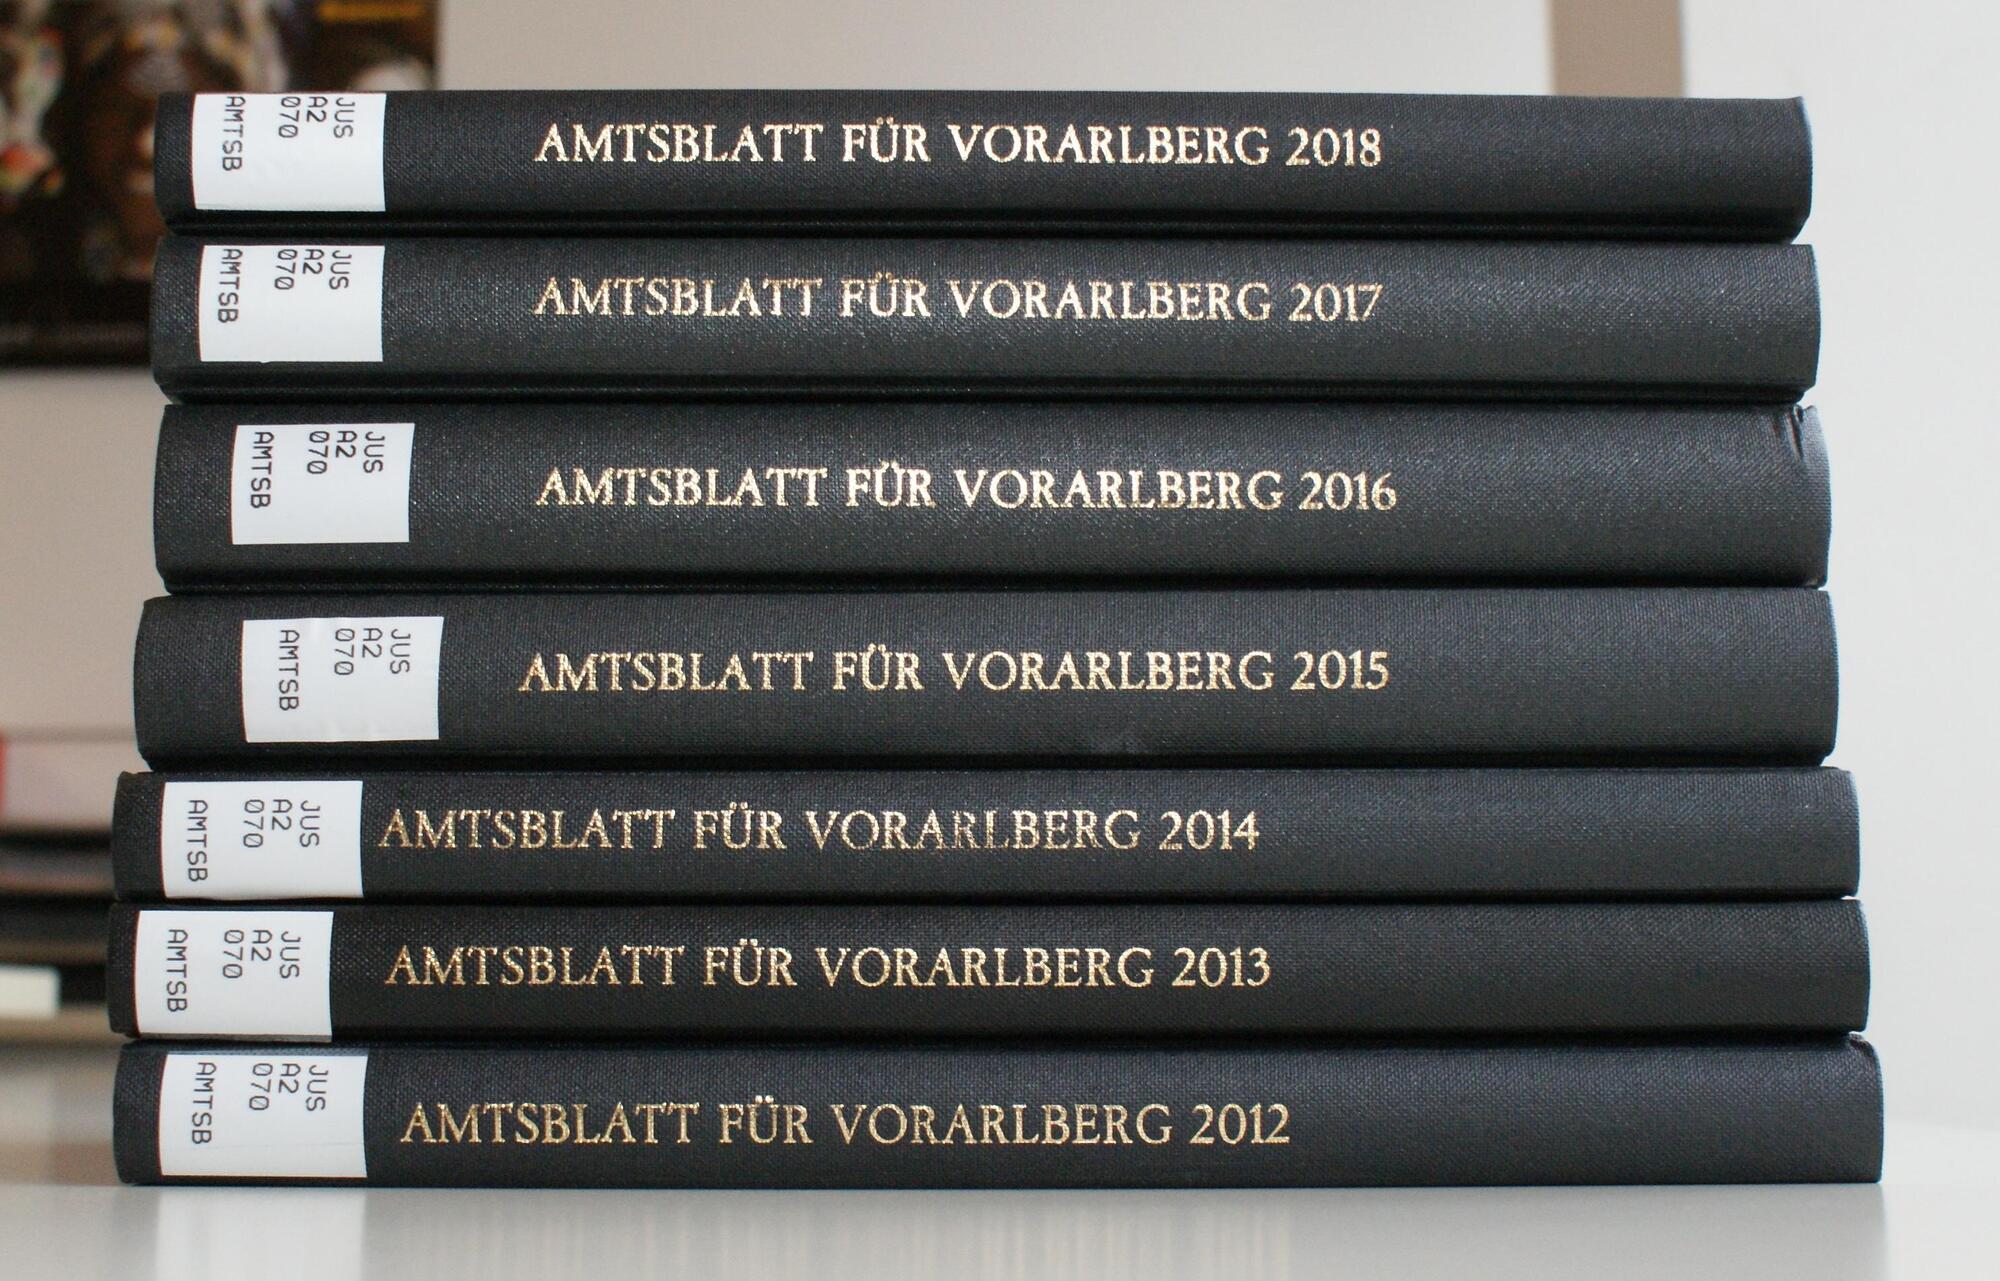 Gebundene Amtsblatt Ausgaben der Jahre 2012 - 2018